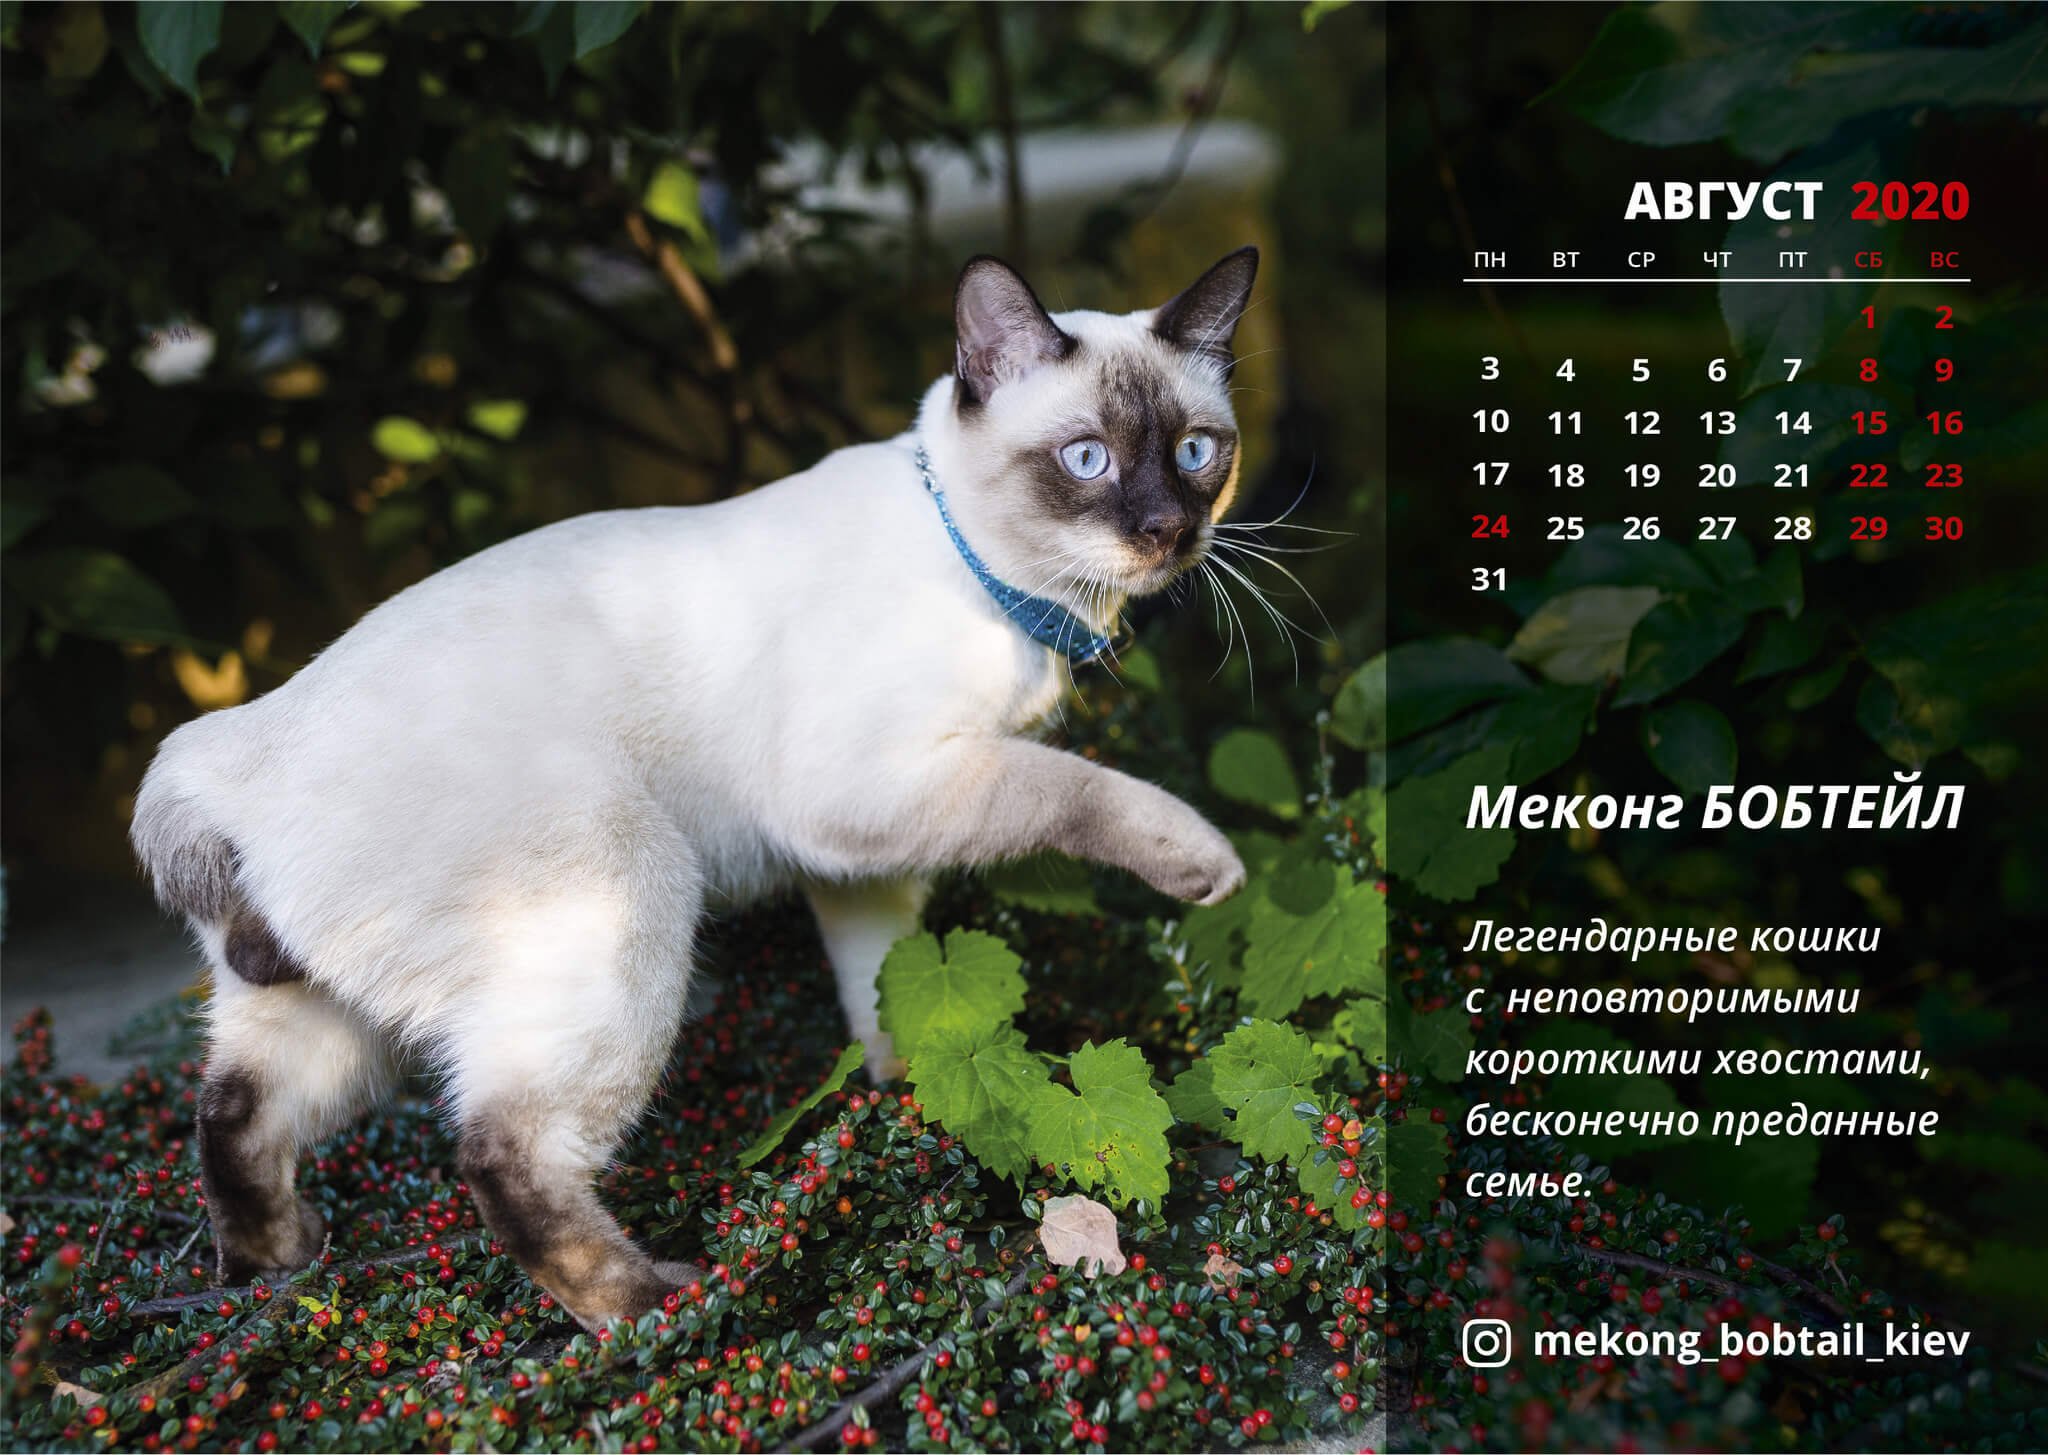 Рассмотрите фотографию кошки меконгский бобтейл. Меконгский (тайский) бобтейл. Меконгский бобтейл кошка. Меконгский бобтейл Blue point. Меконгский бобтейл ред Пойнт.